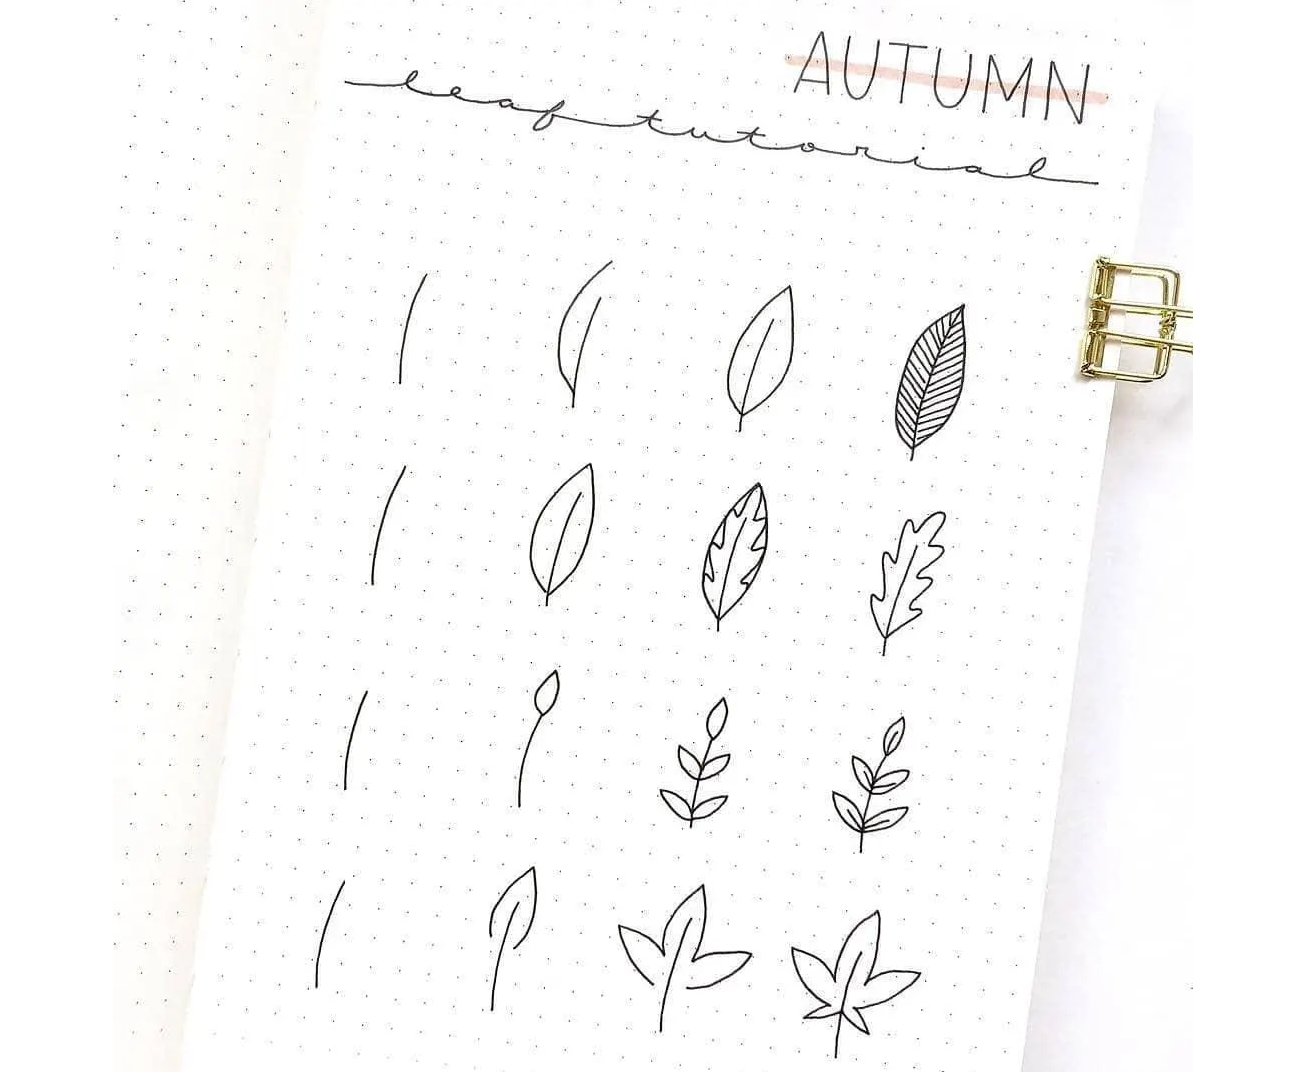 Autumn leaves doodle